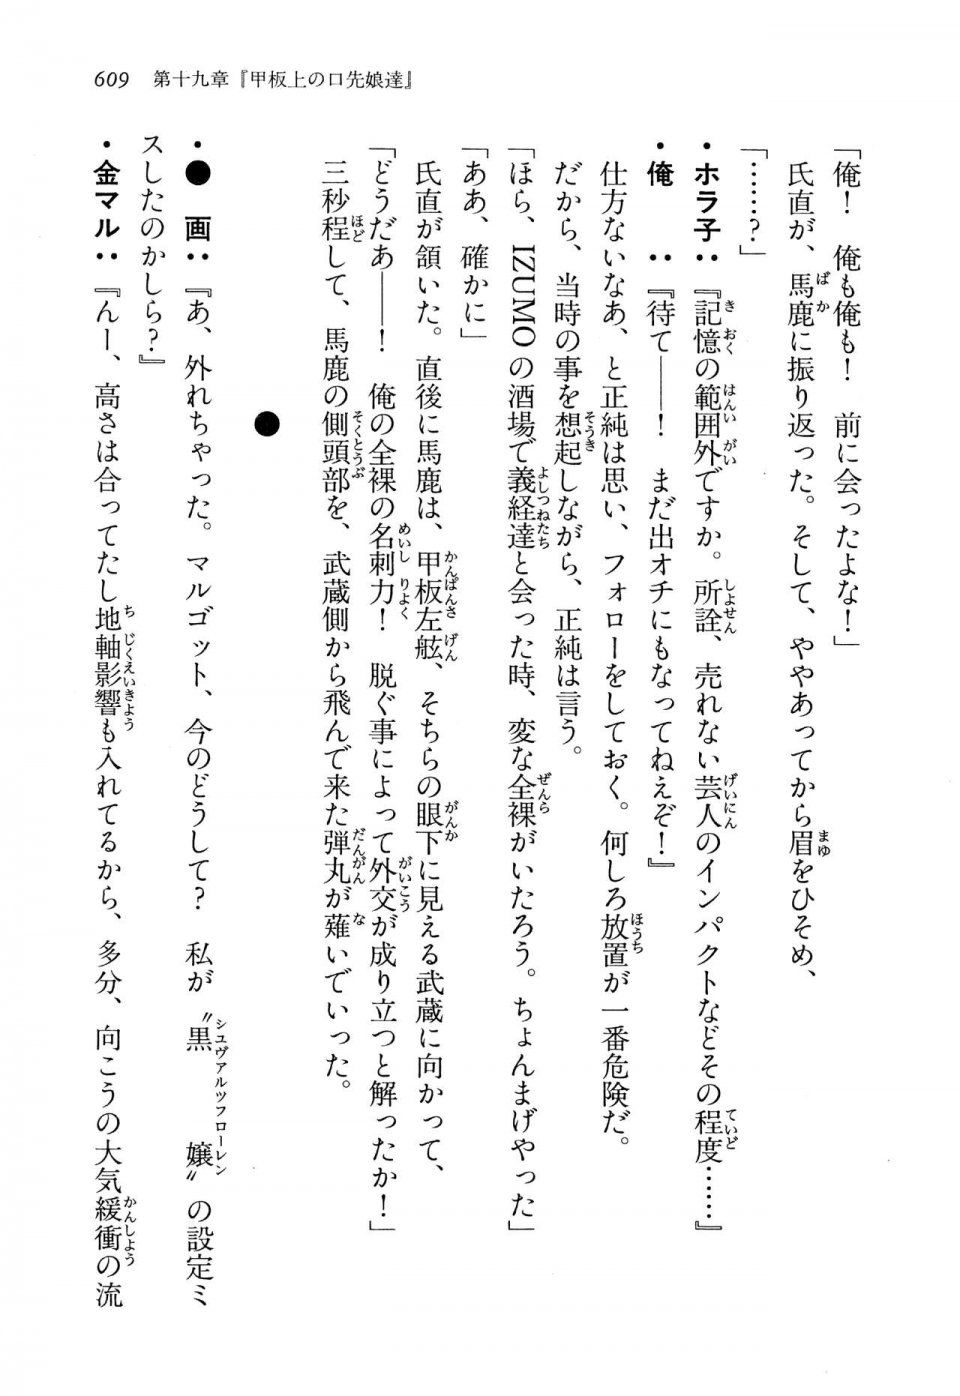 Kyoukai Senjou no Horizon LN Vol 13(6A) - Photo #609